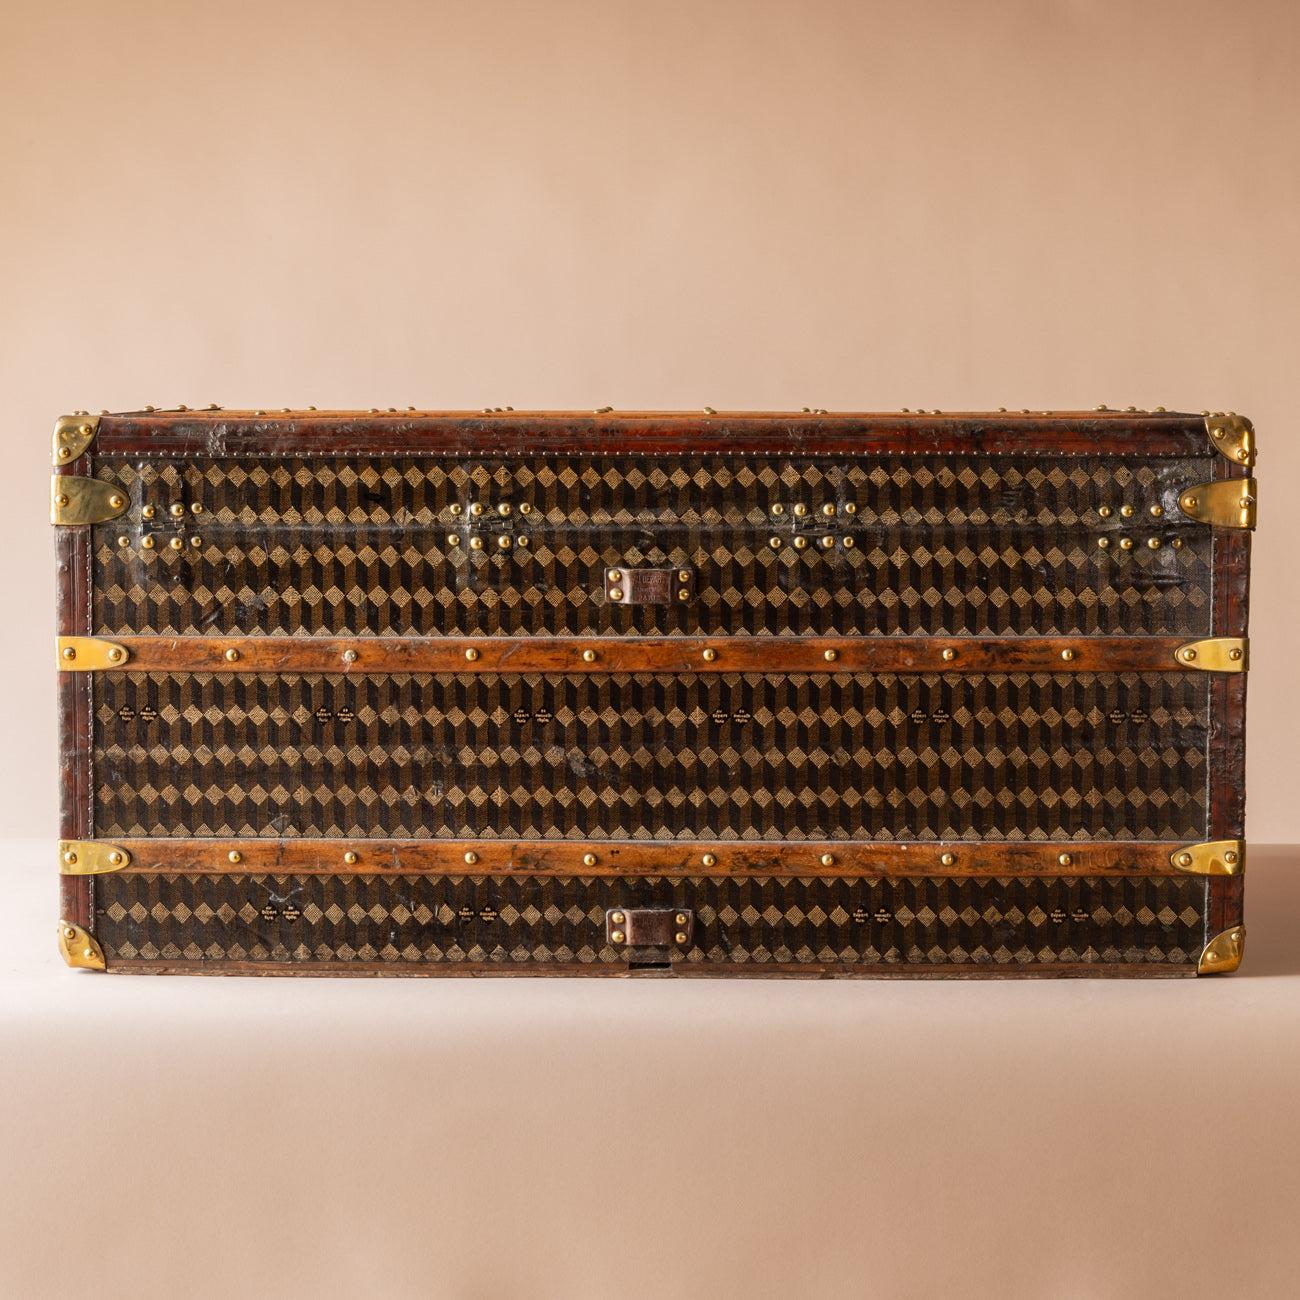 Une magnifique malle du fabricant français Au Départ. Avec accessoires en laiton et garniture en cuir. Vers 1910. La doublure en coton d'origine endommagée de l'intérieur a été remplacée par une doublure similaire.

Dimensions : 101 cm (longueur) x